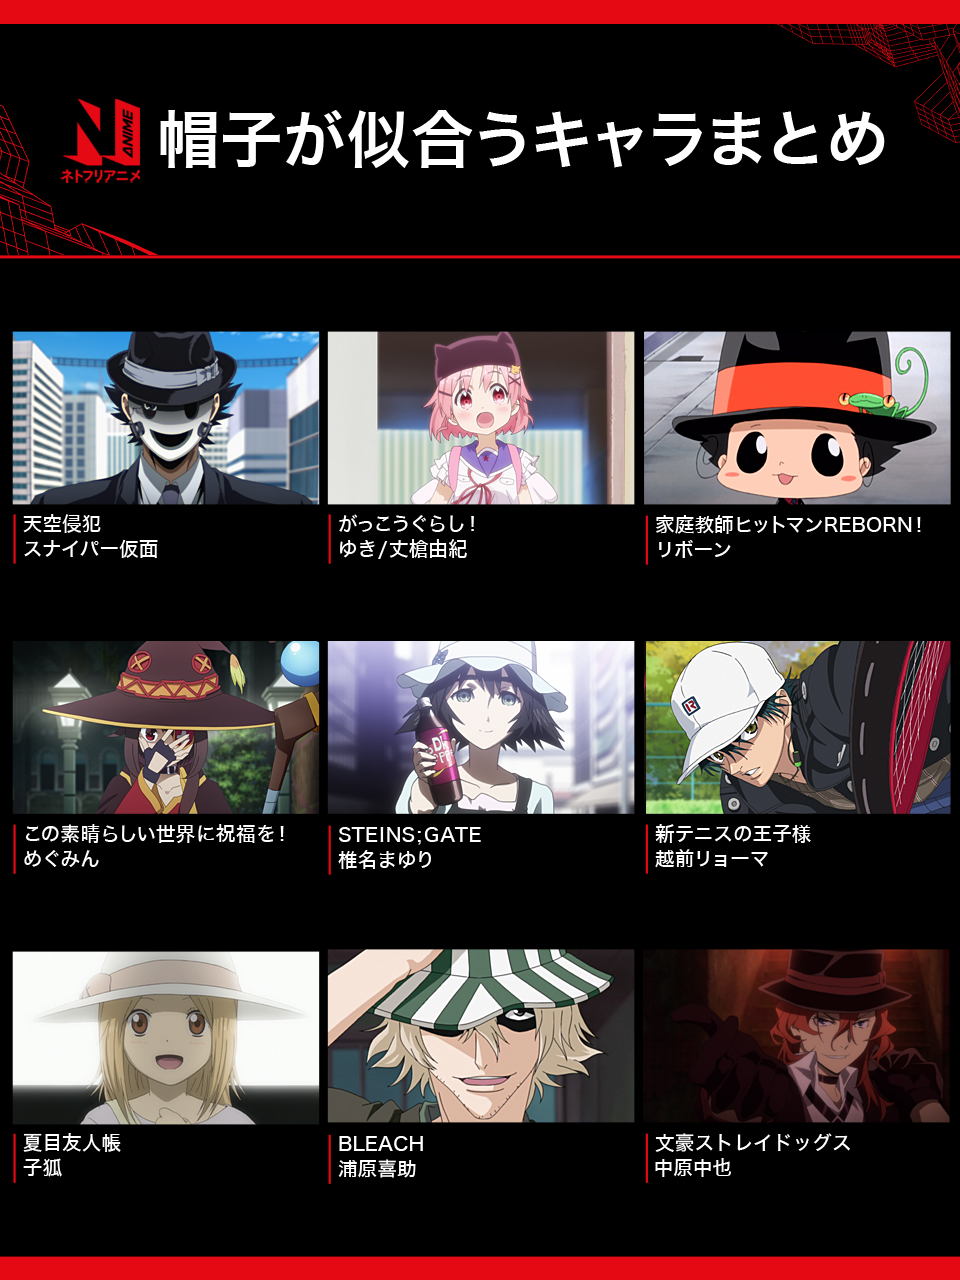 Netflix Japan Anime En Twitter ネトフリ で配信中のアニメから 帽子が似合うキャラクターを一部集めてみました 他にも帽子の似合う個性的なアニメキャラはたくさんいますね 皆さんの好きな帽子キャラは ネトフリアニメ 帽子の日 T Co Eobnzfgvfy